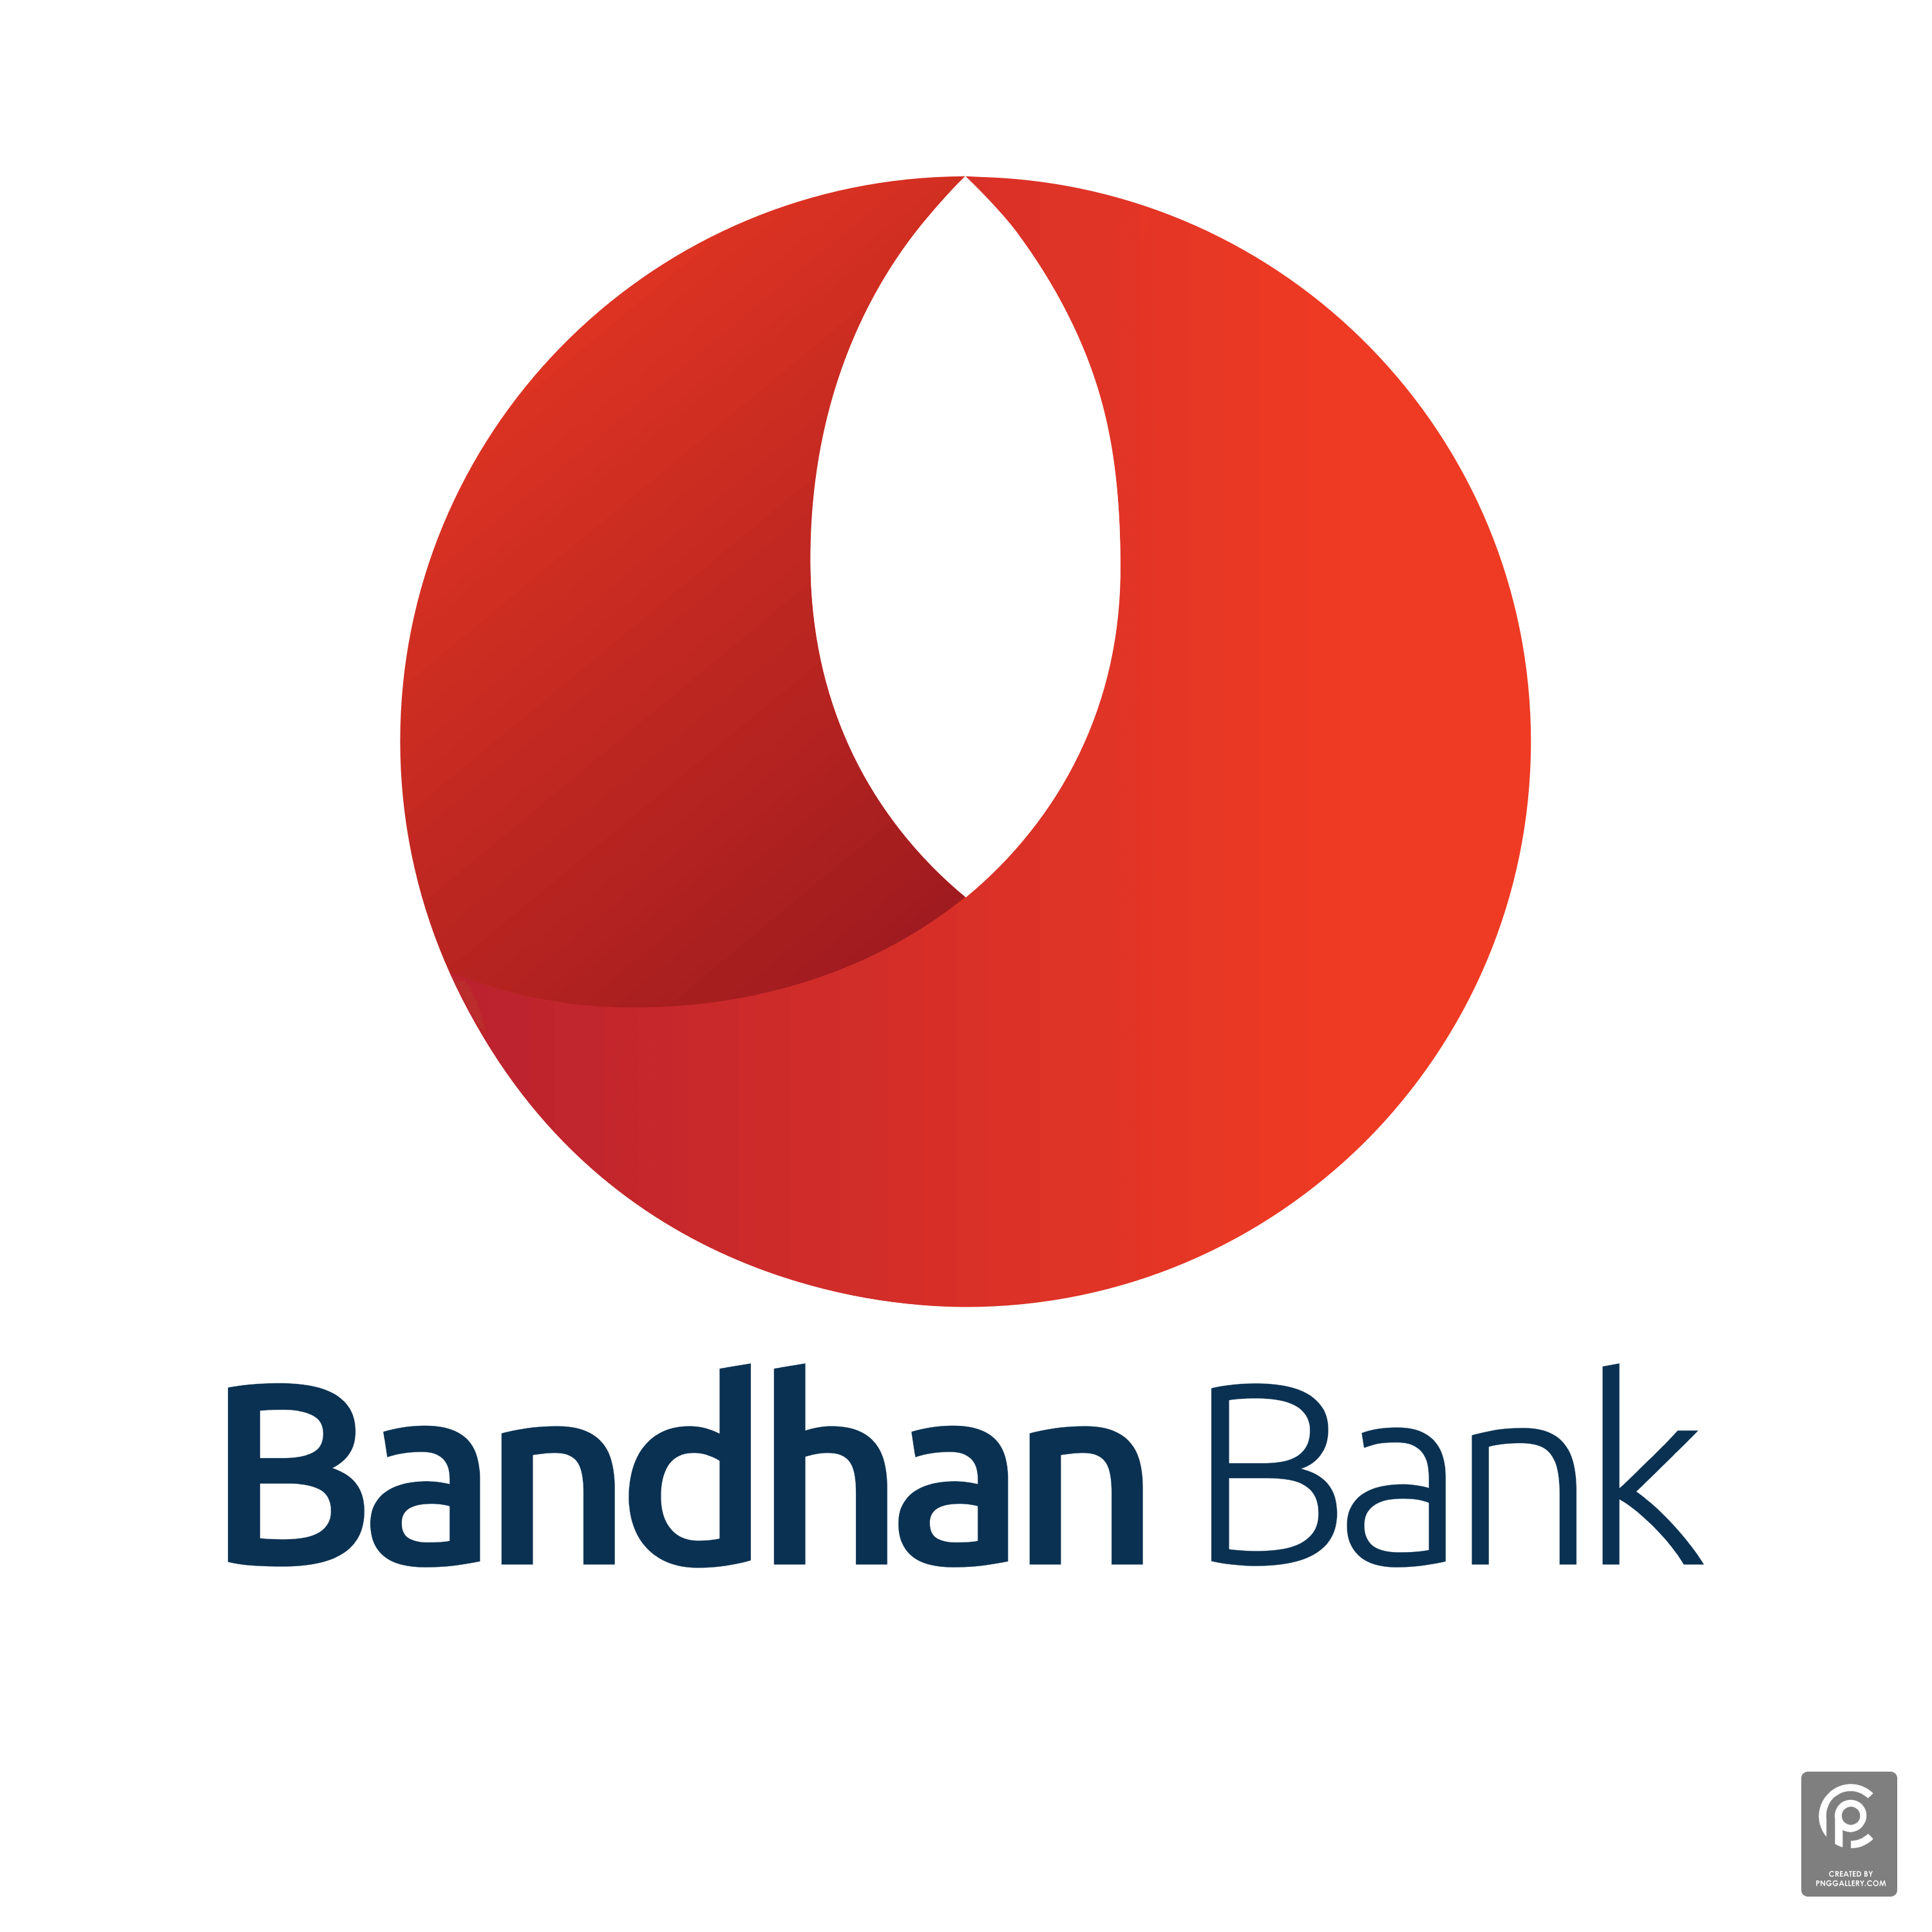 Bandhan Bank Logo Transparent Gallery